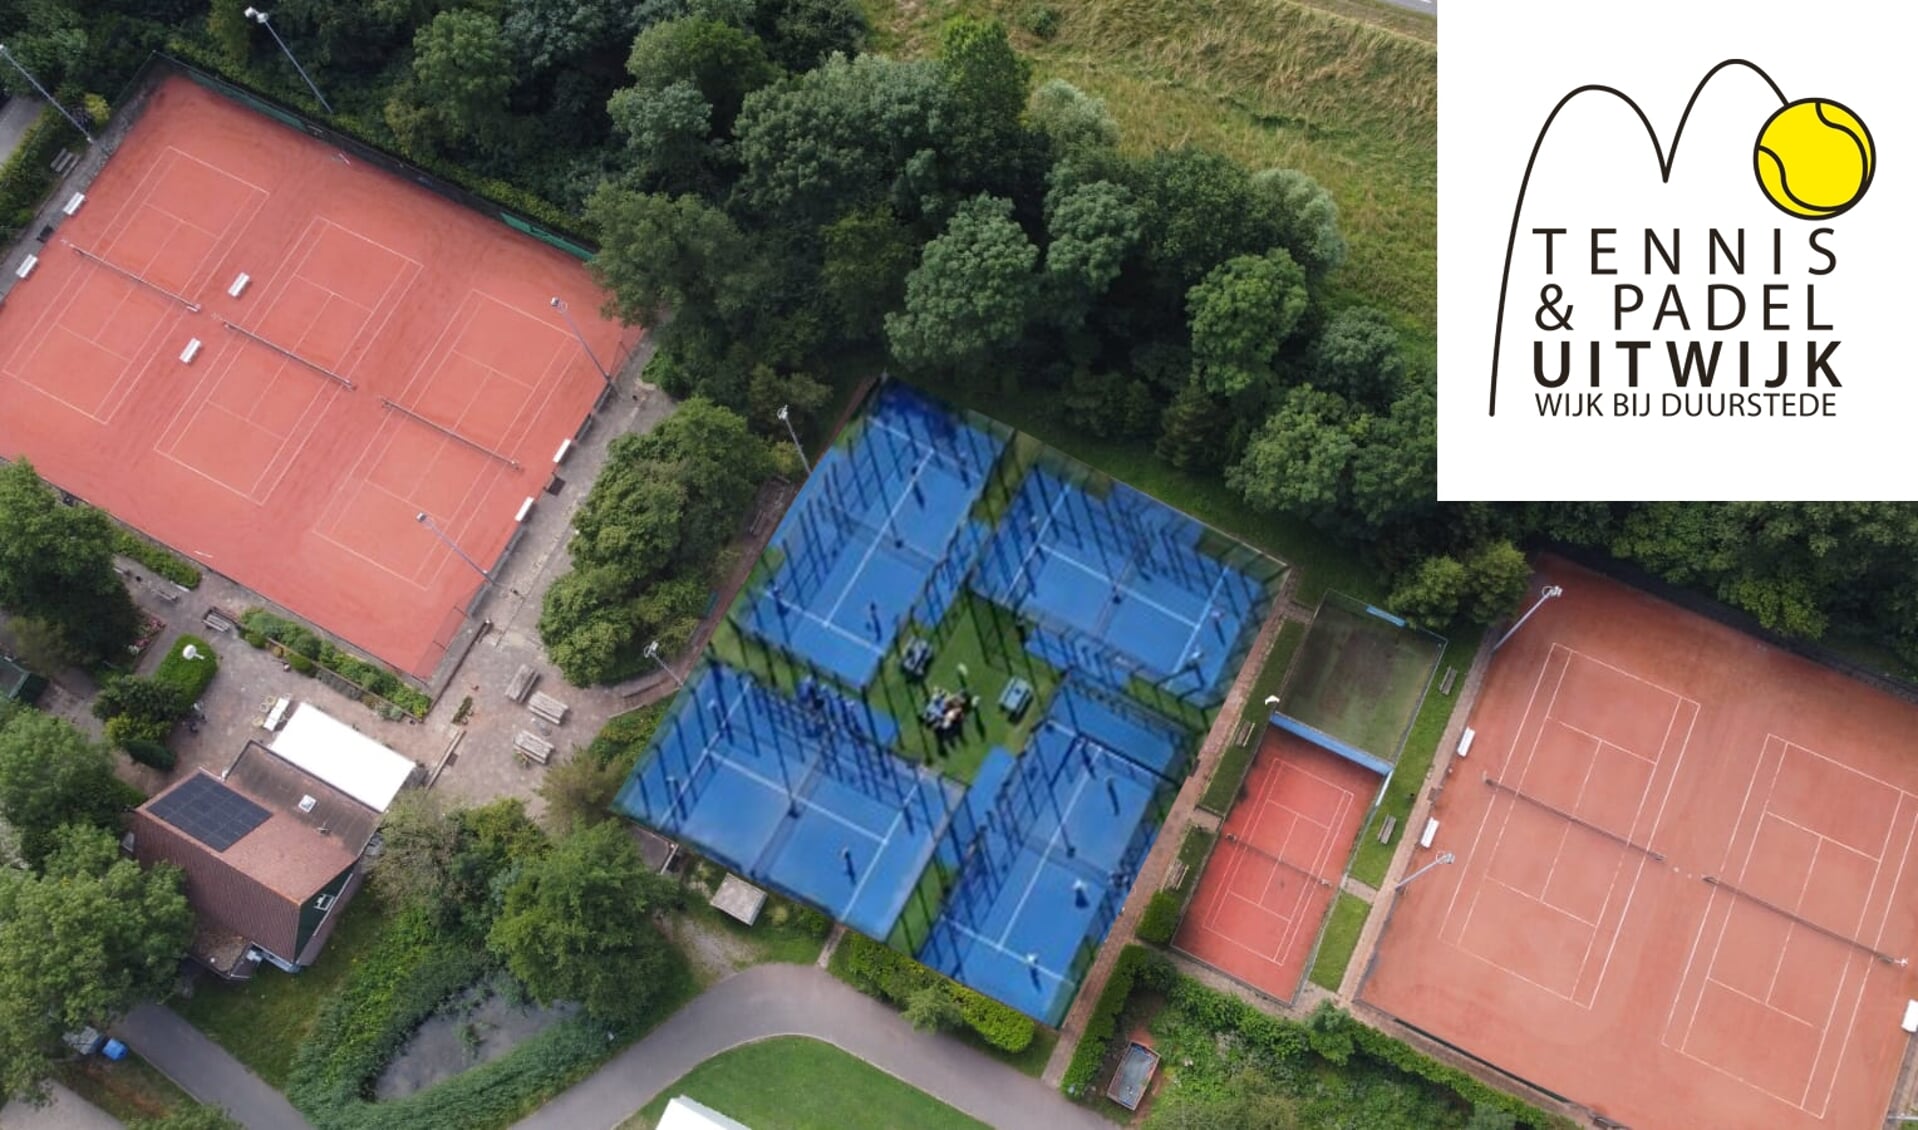 De 4 nieuwe padelbanen van TV Uitwijk worden tussen de bestaande tennisbanen ingelegd